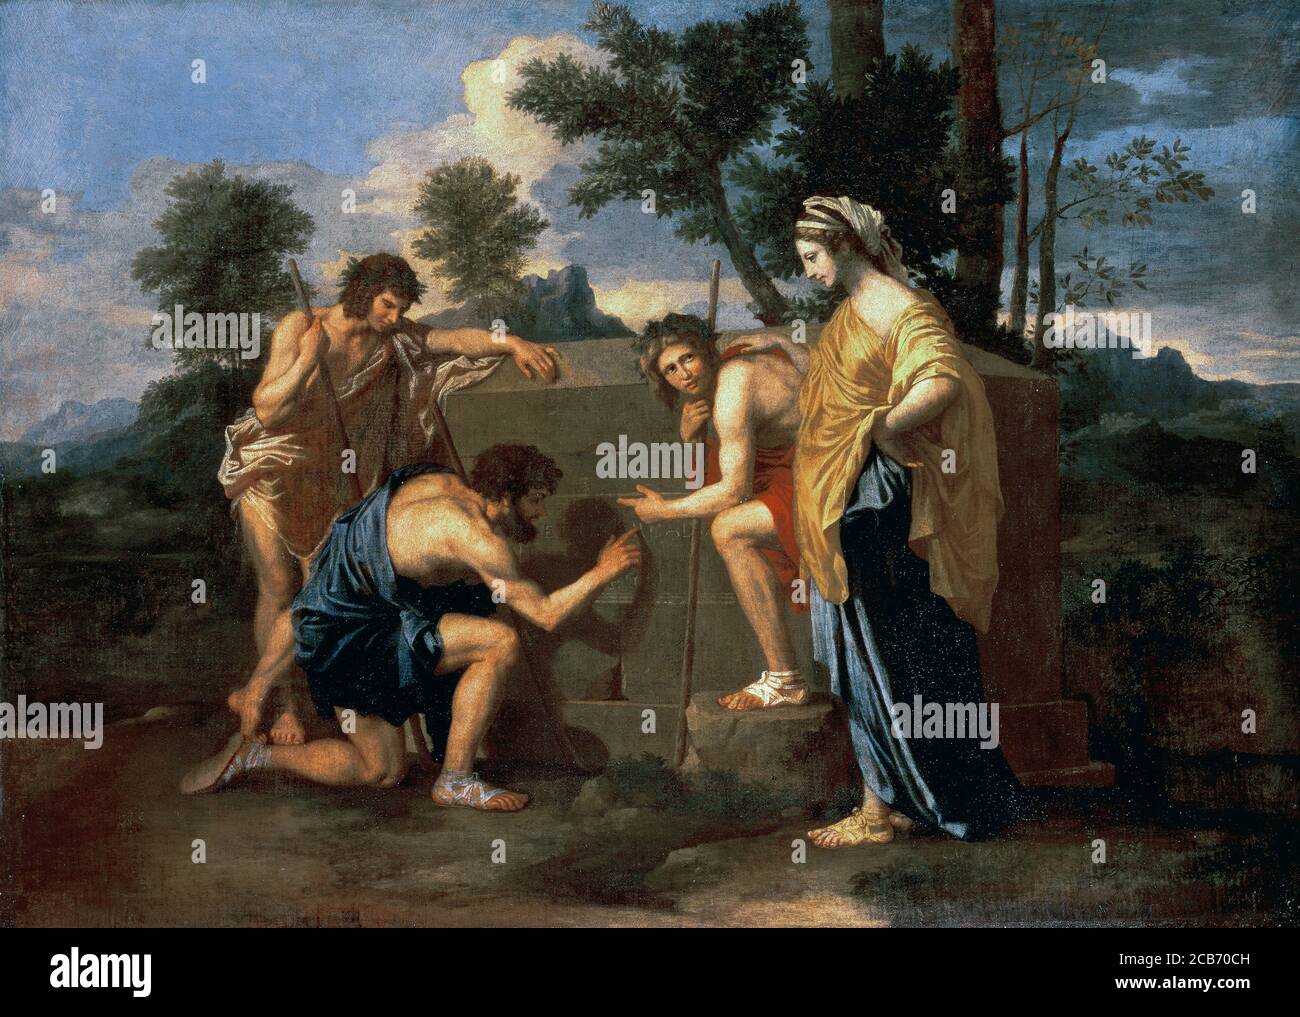 Nicolas Poussin (1594-1665). Der führende Maler des klassischen französischen Barockstils. Et in Arcadia Ego (die Hirten von Arkadien), zweite Version, (1637-1638). Öl auf Leinwand (85 x 121 cm). Louvre Museum. Paris, Frankreich. Stockfoto